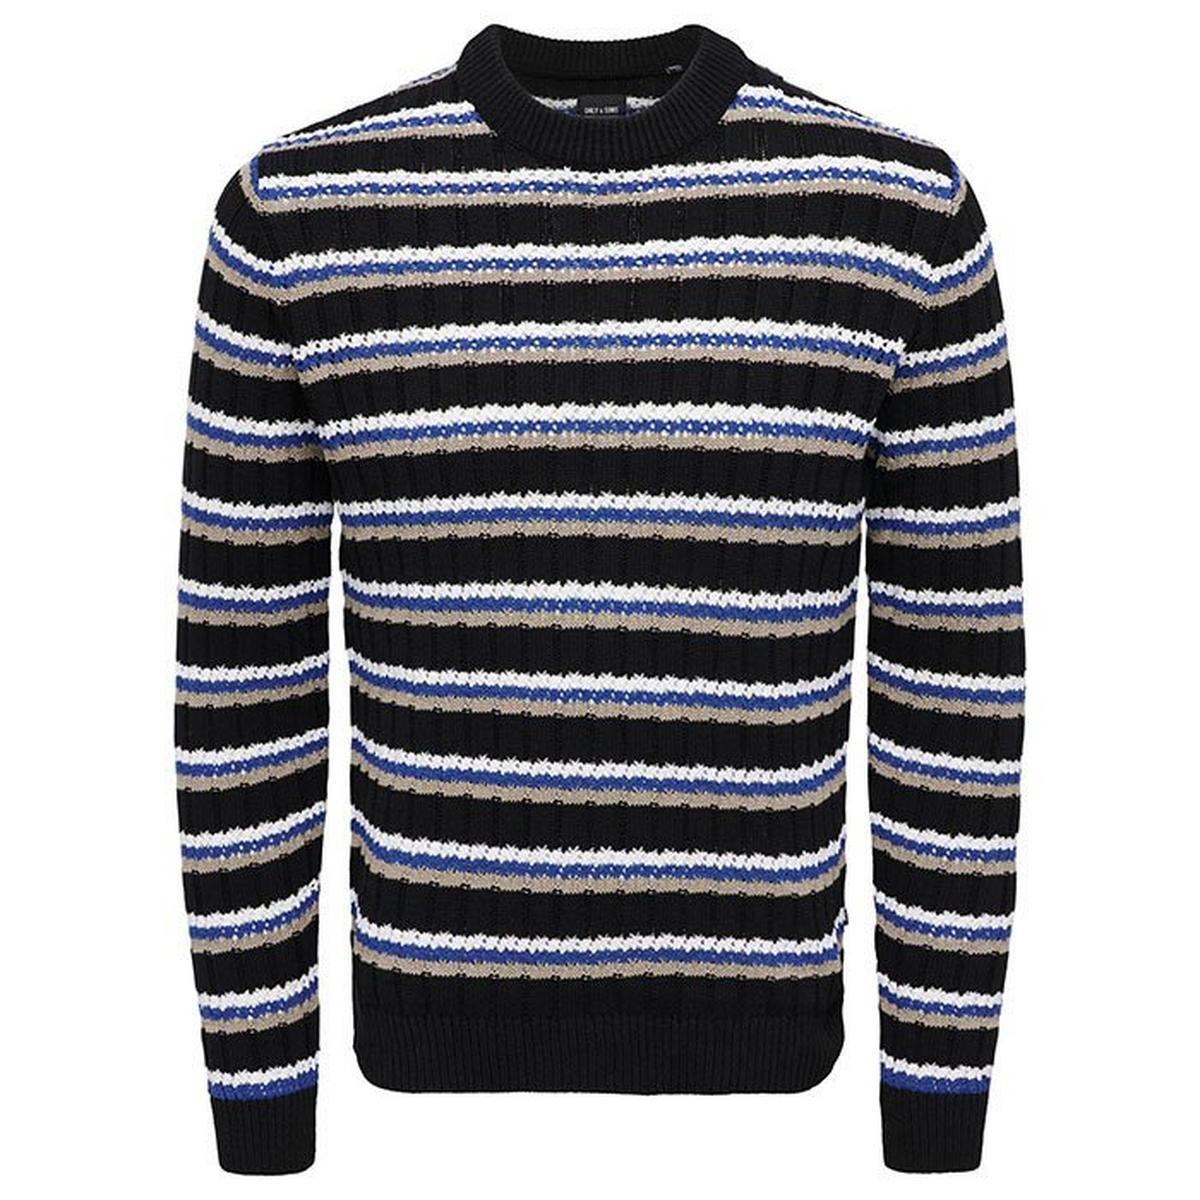 Men's Crochet Stripe Sweater